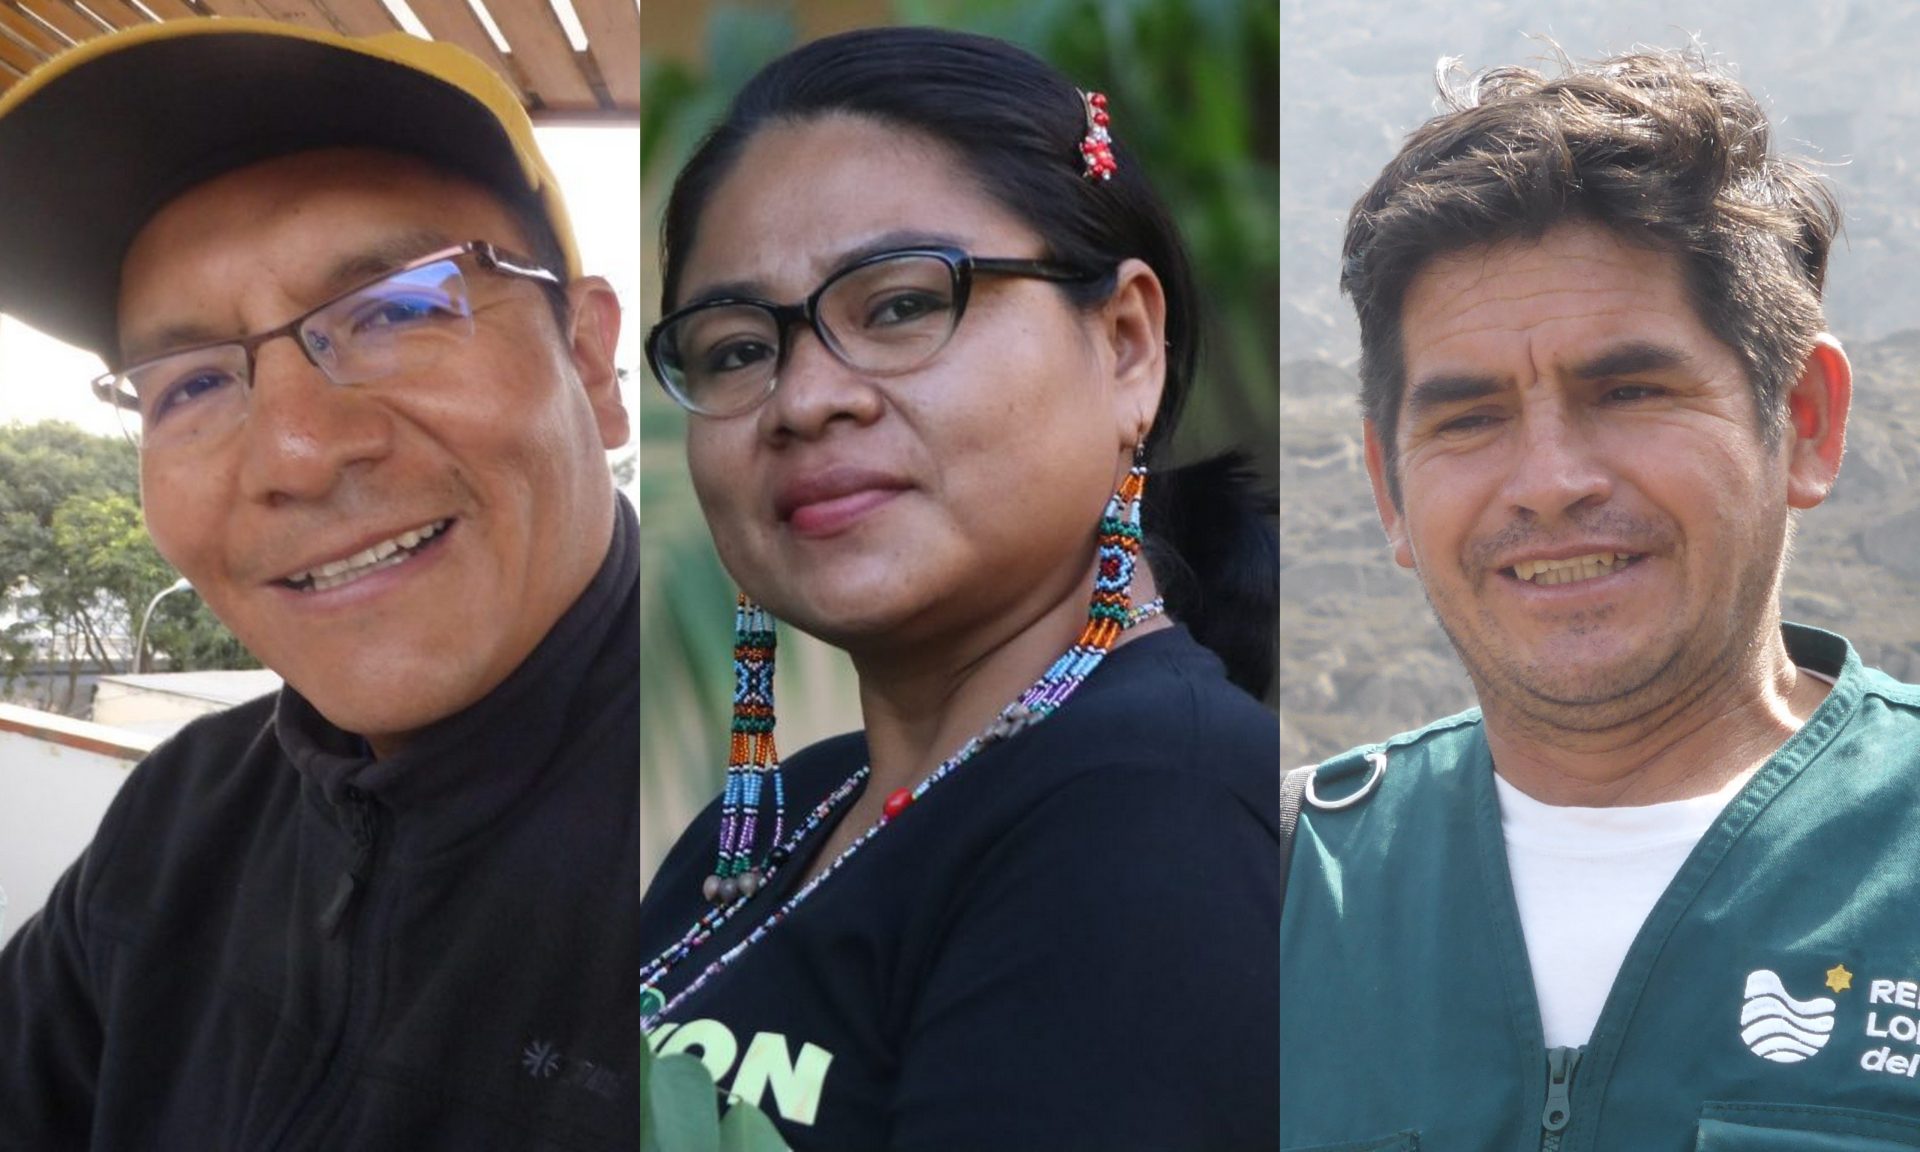 Umweltaktivist*innen in Peru – ein Austausch zwischen Sierra, Selva und Costa